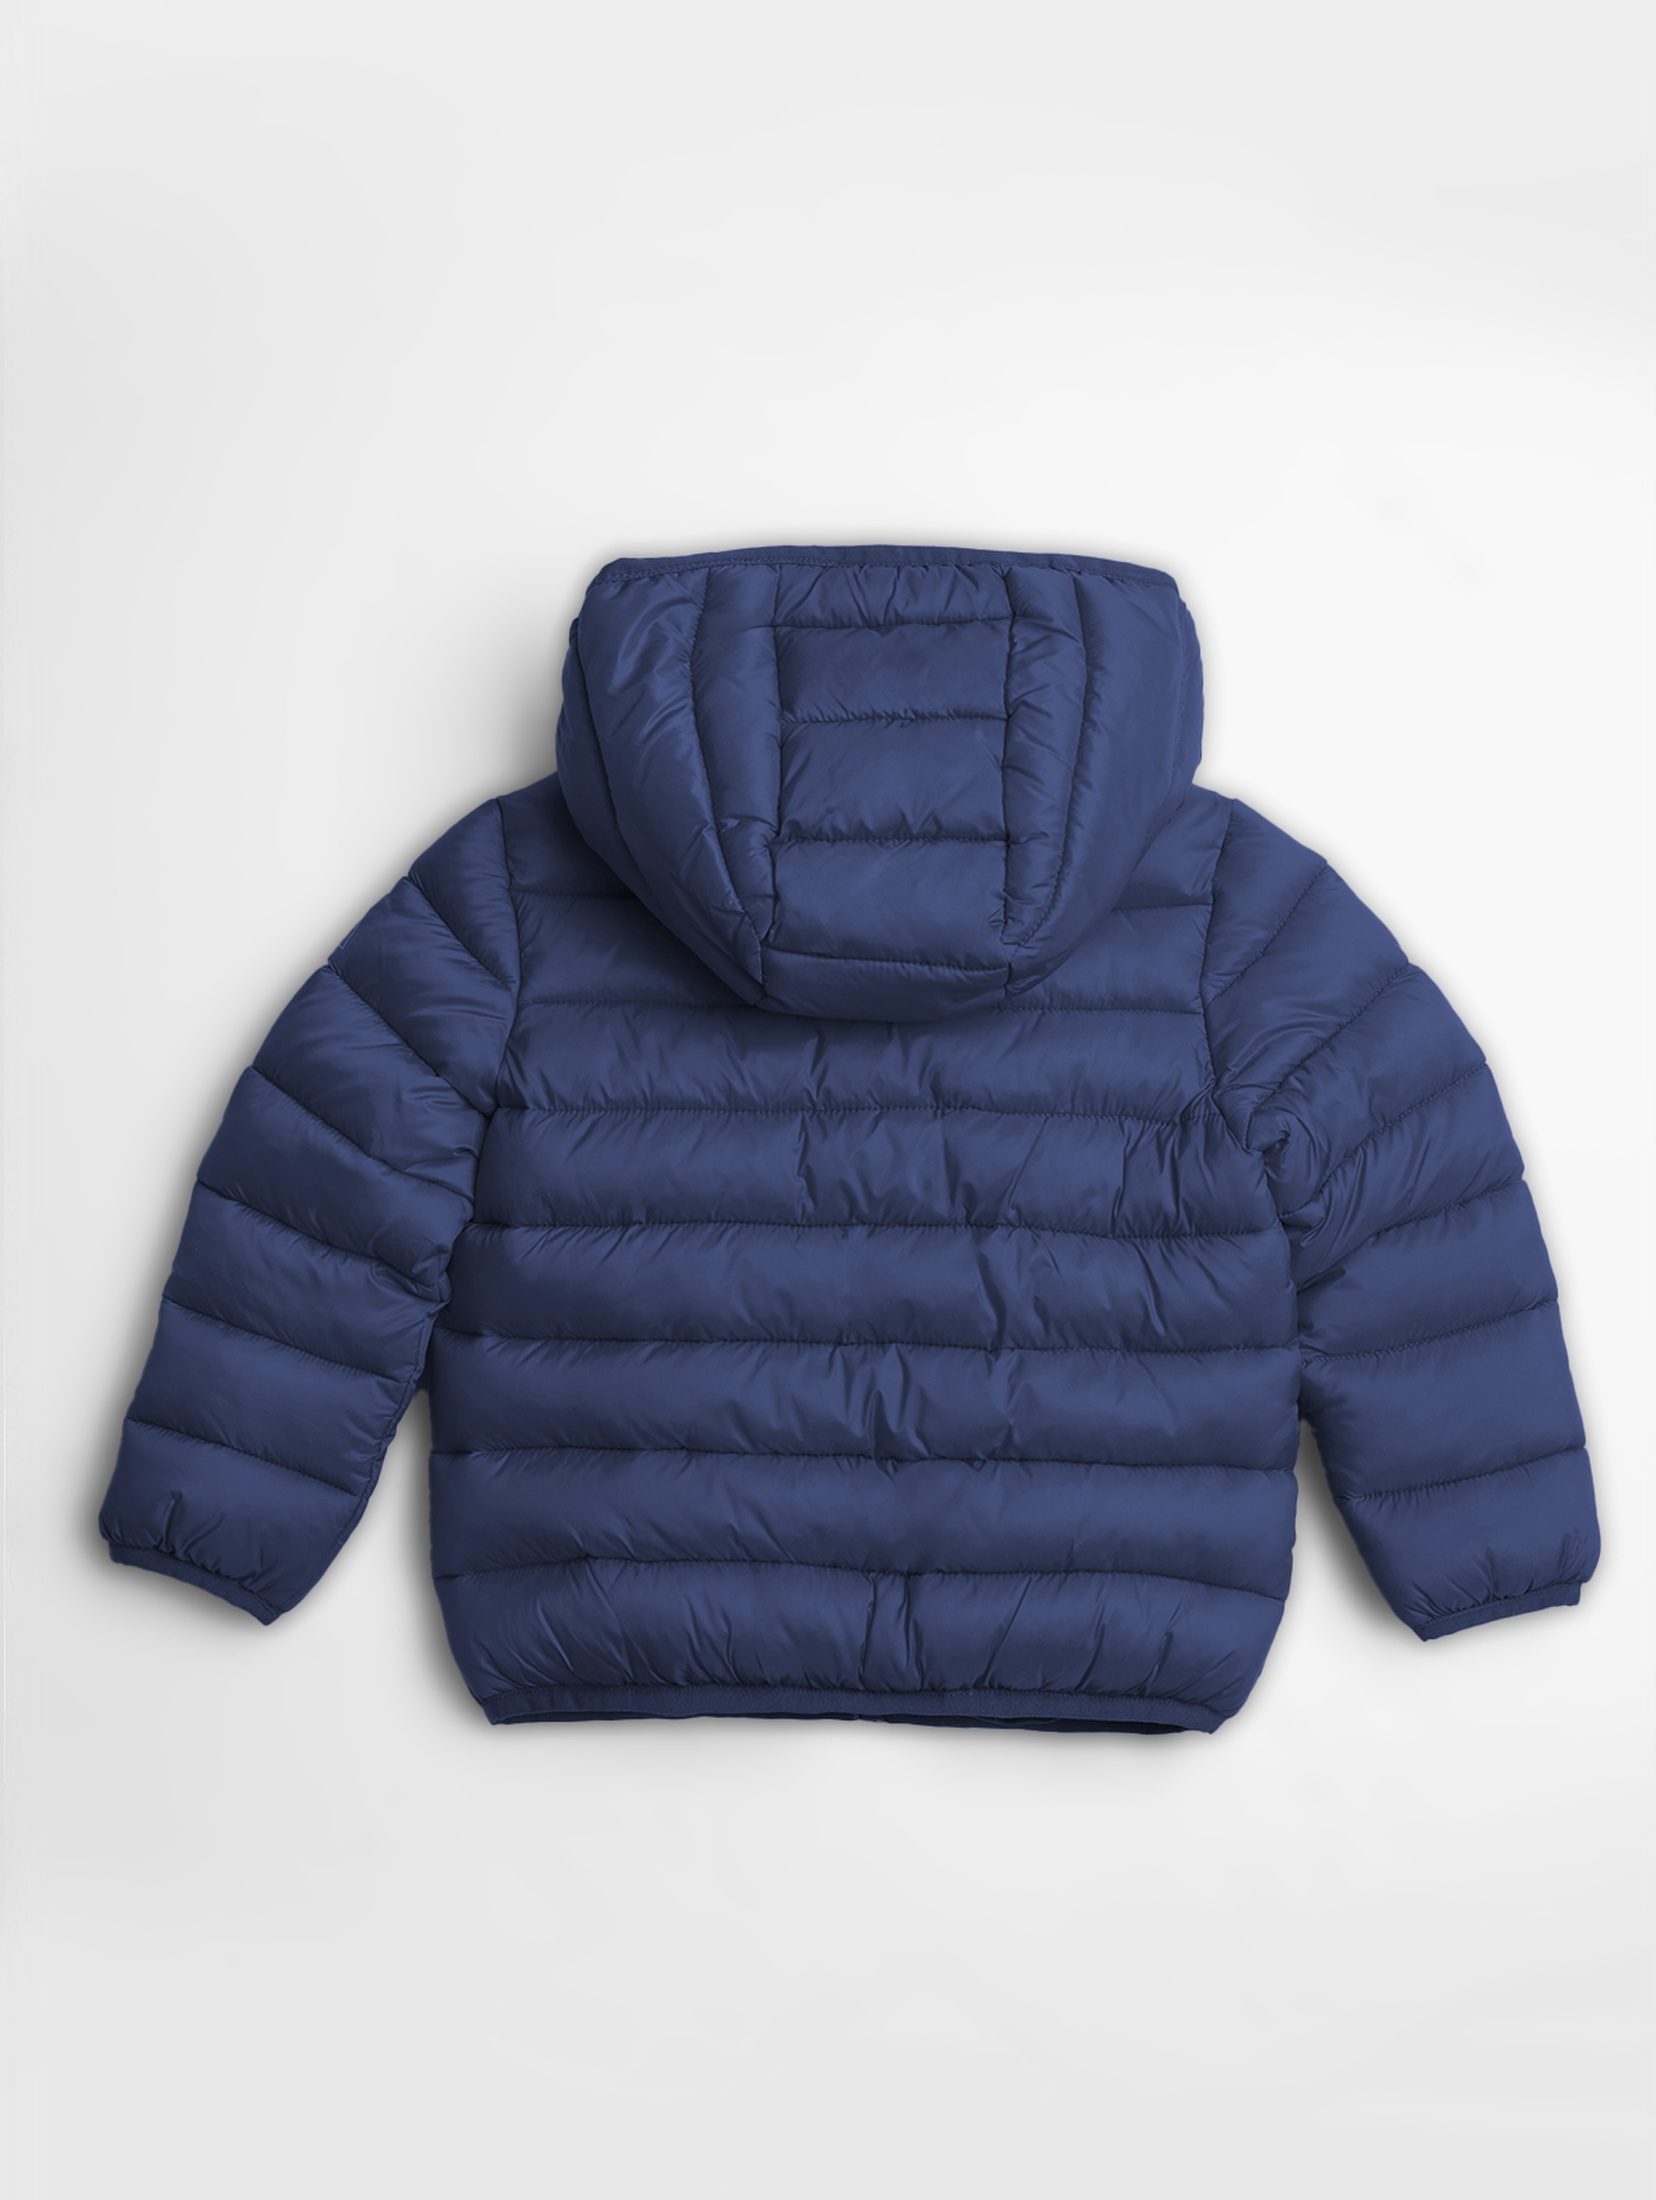 Lekka, pikowana kurtka przejściowa dla dziecka - granatowa - unisex -Limited Edition